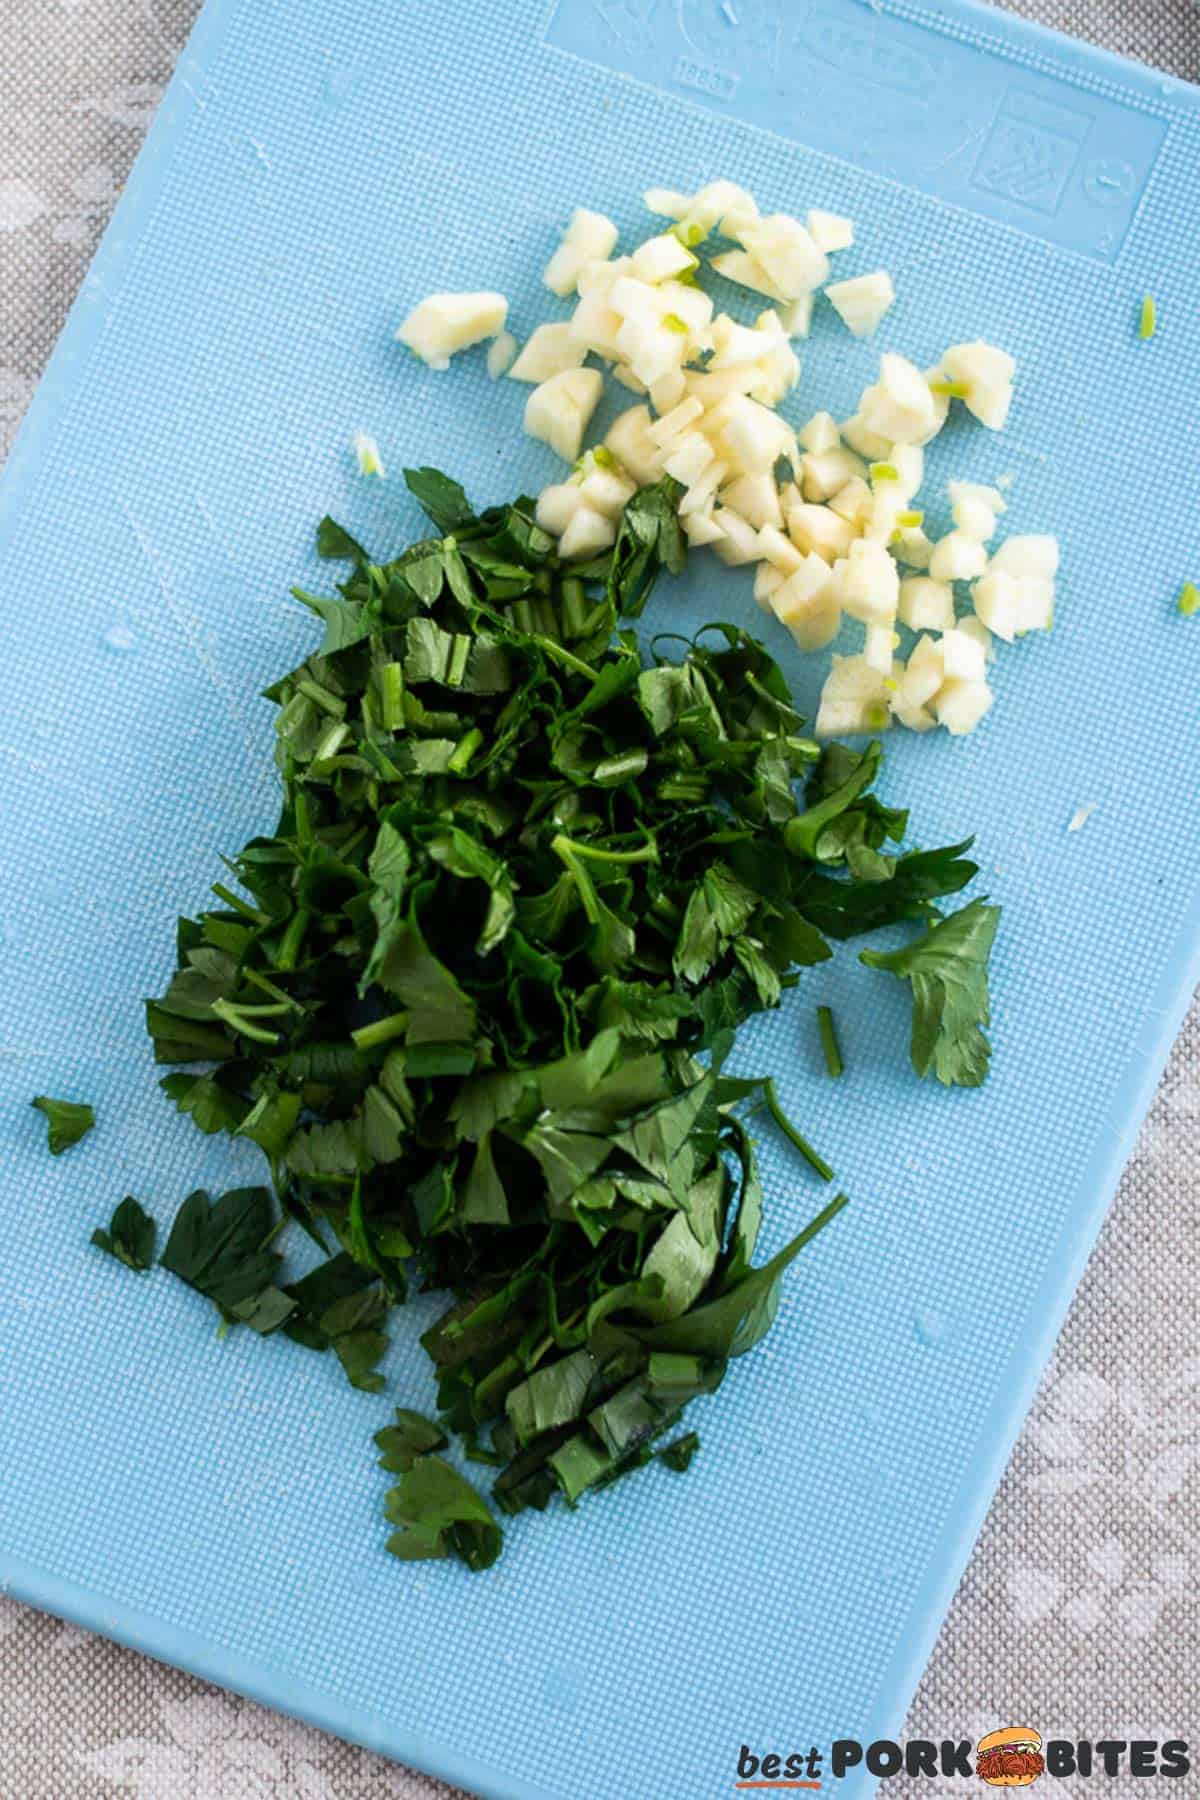 chopped parsley and garlic on a blue cutting board